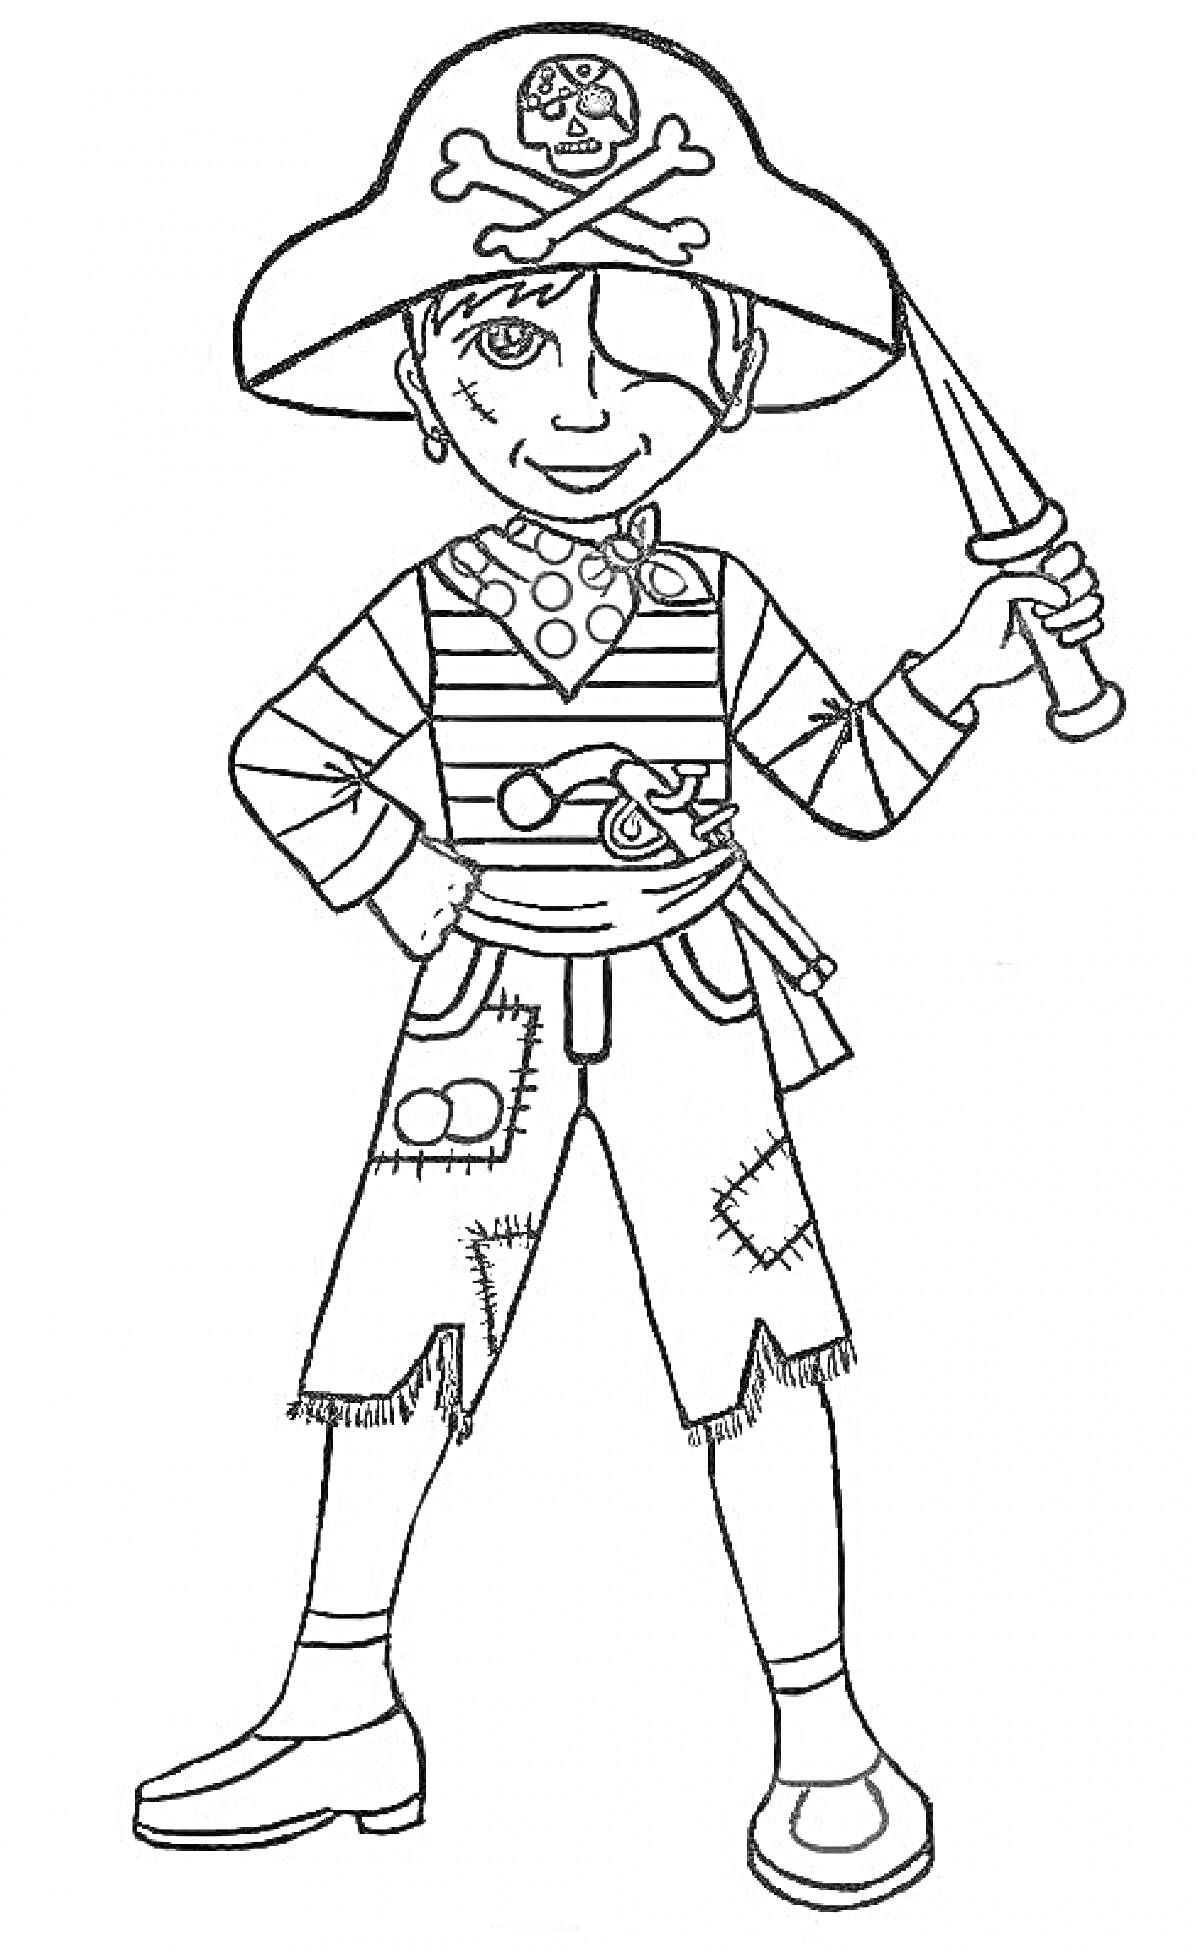 Пиратский костюм с попугаем, пиратской шляпой с черепом, полосатым свитером, искусственным мечом, нашивками на штанах и ботинками